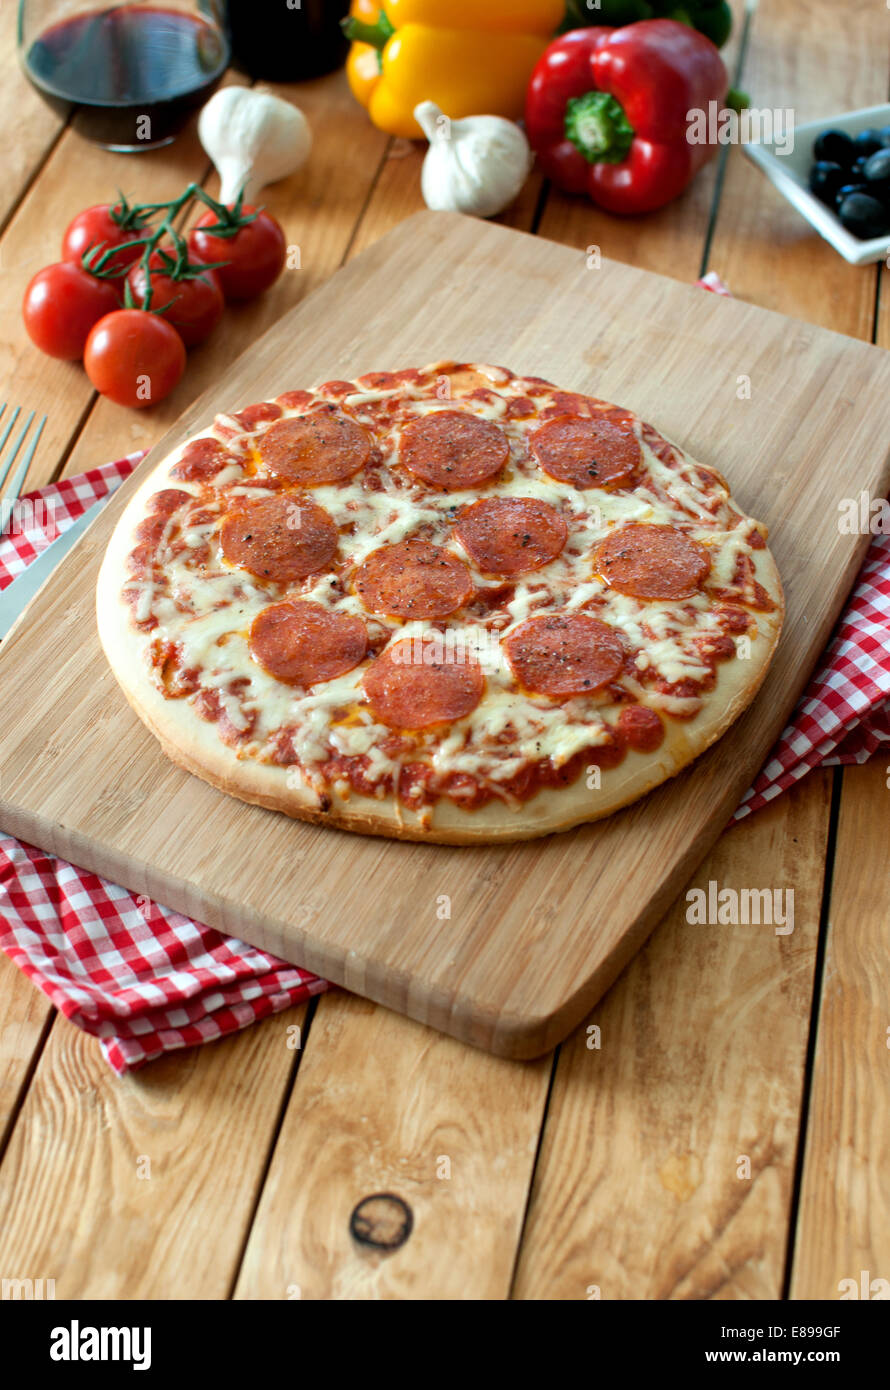 Deliciosa pizza italiana con queso mozzarella derretido Foto de stock